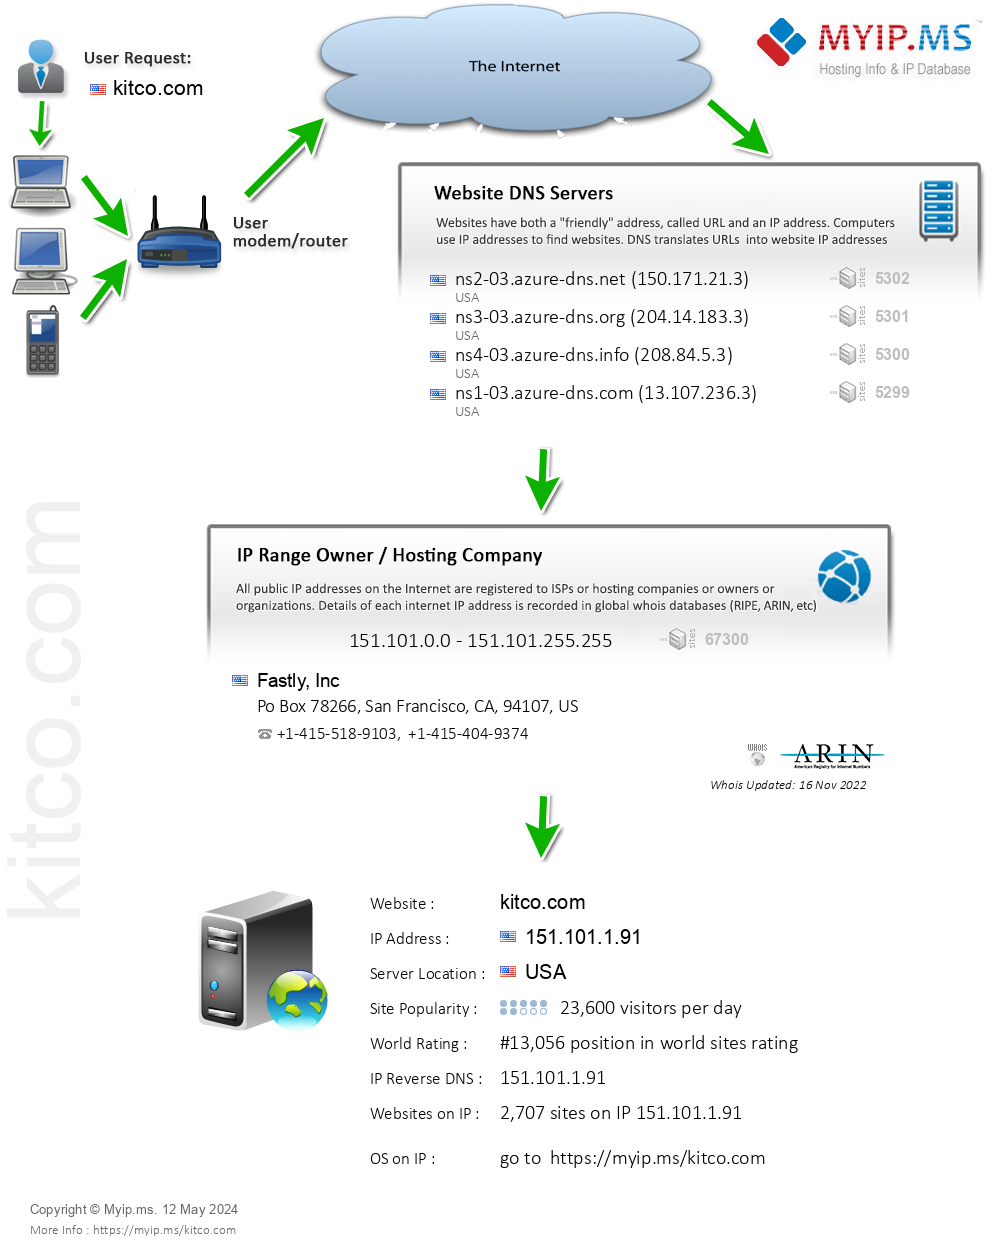 Kitco.com - Website Hosting Visual IP Diagram